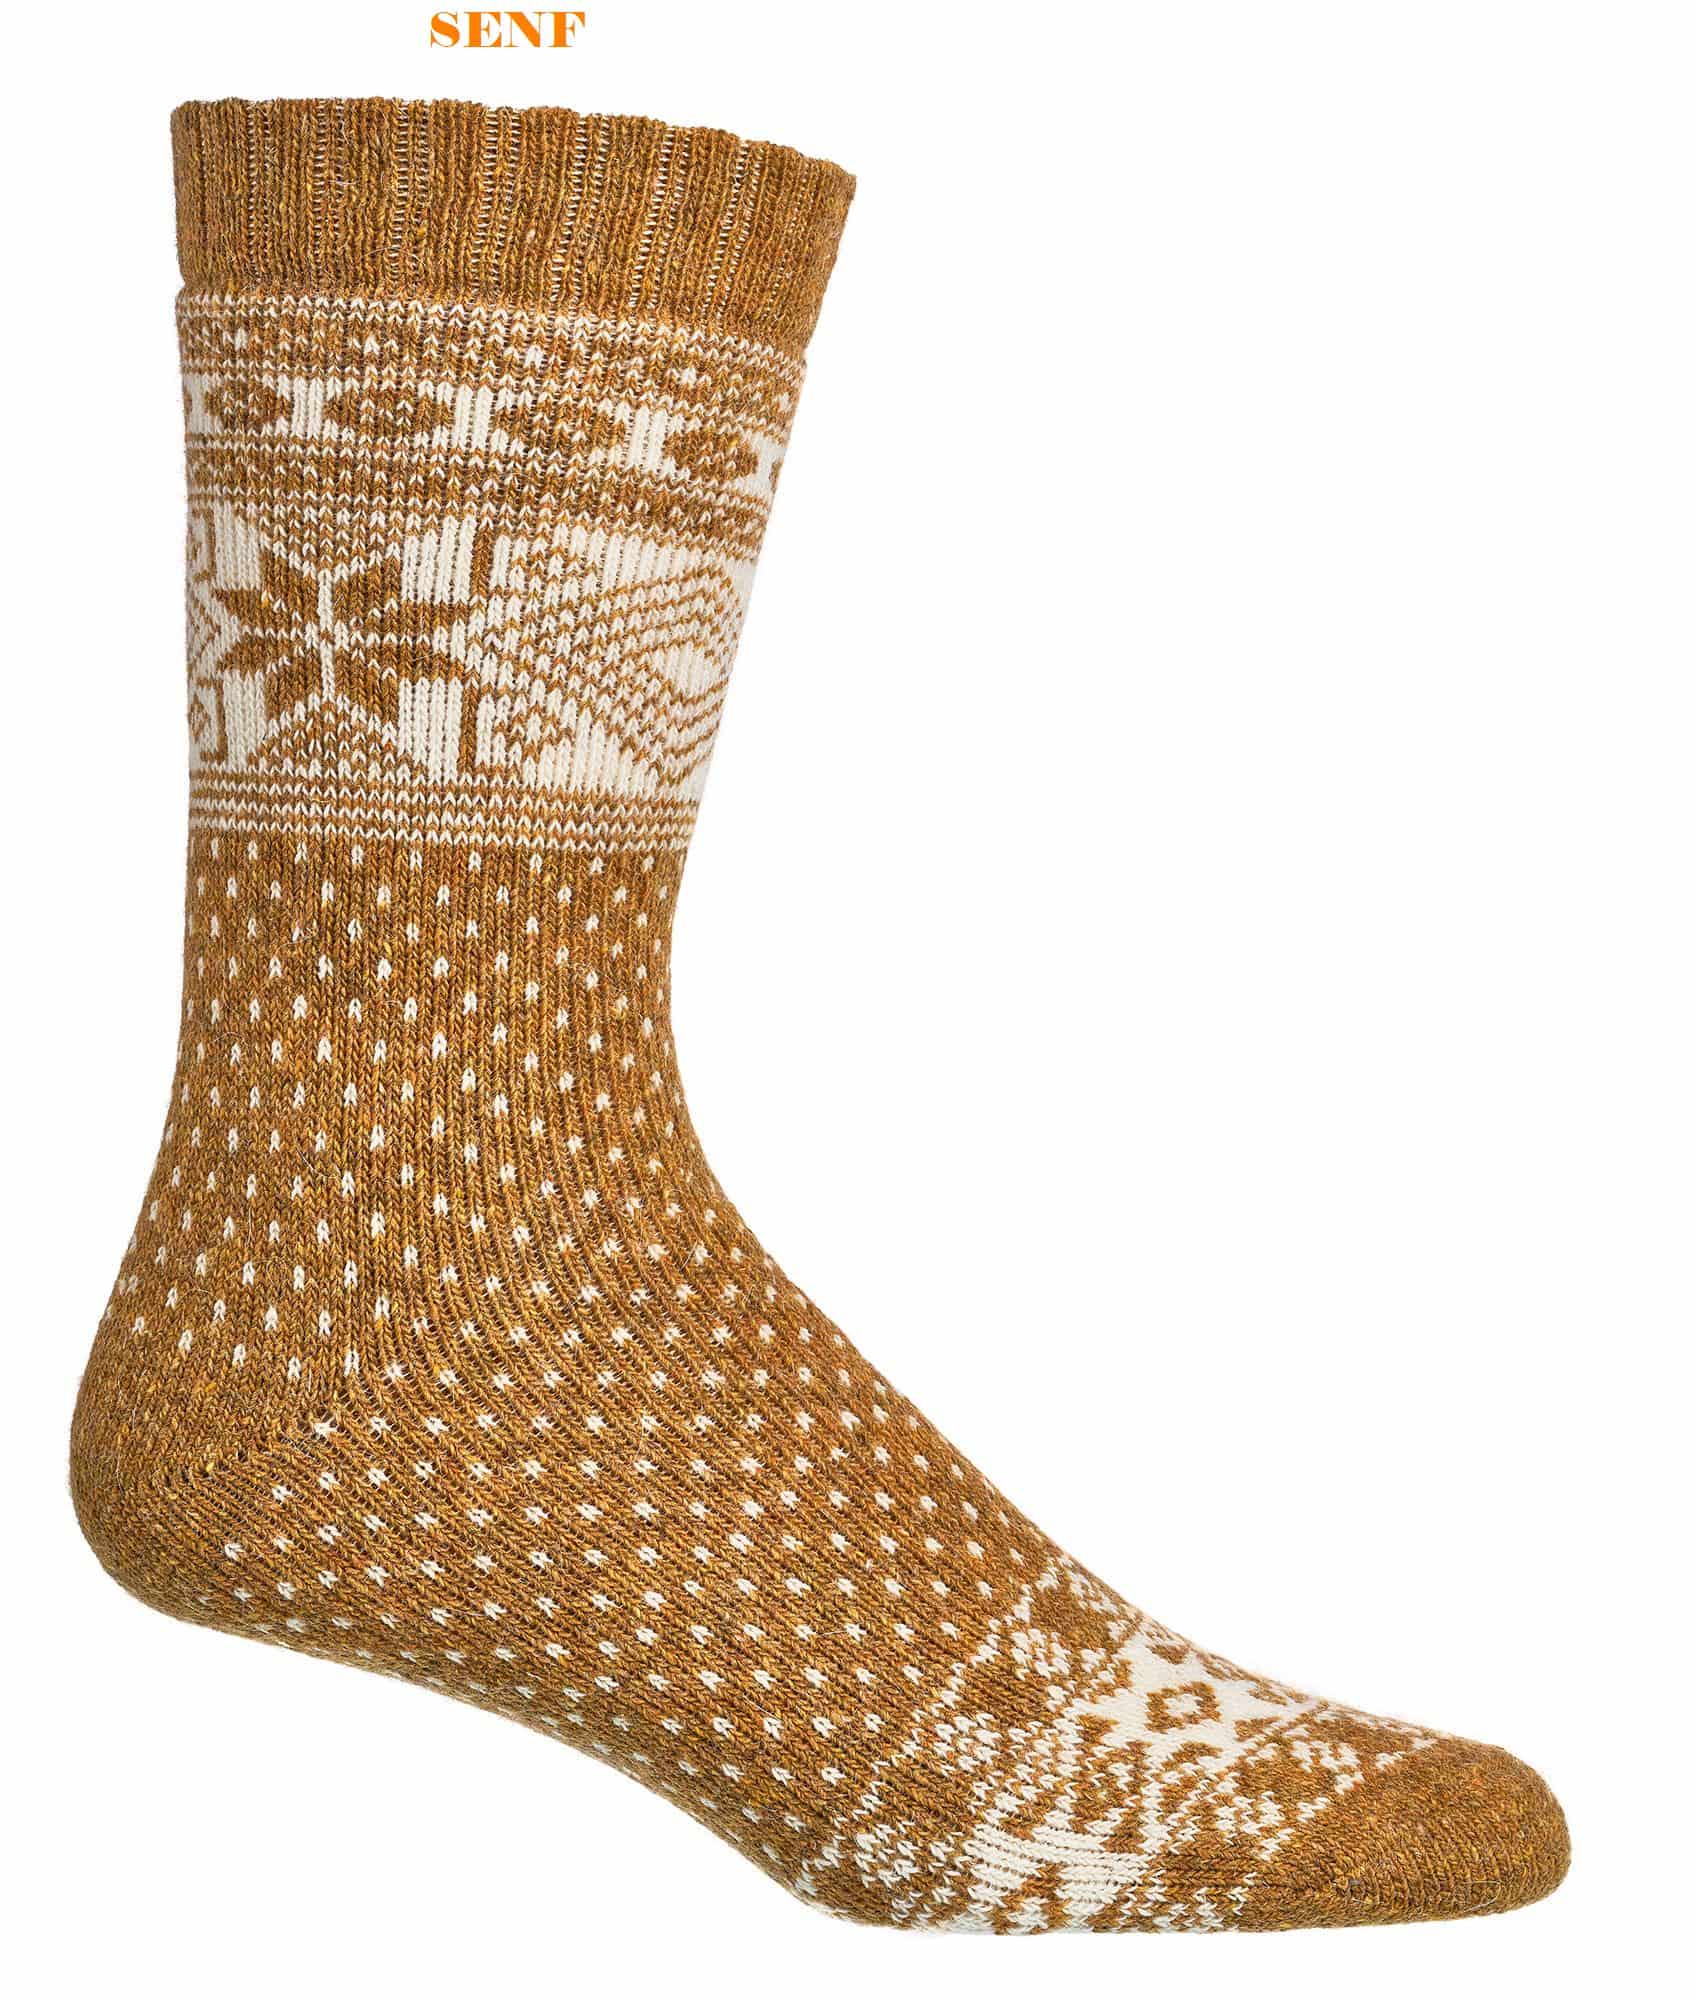 DAMEN & HERREN Norweger-Socken mit Merino- und Alpaka WOLLE    2 Paar